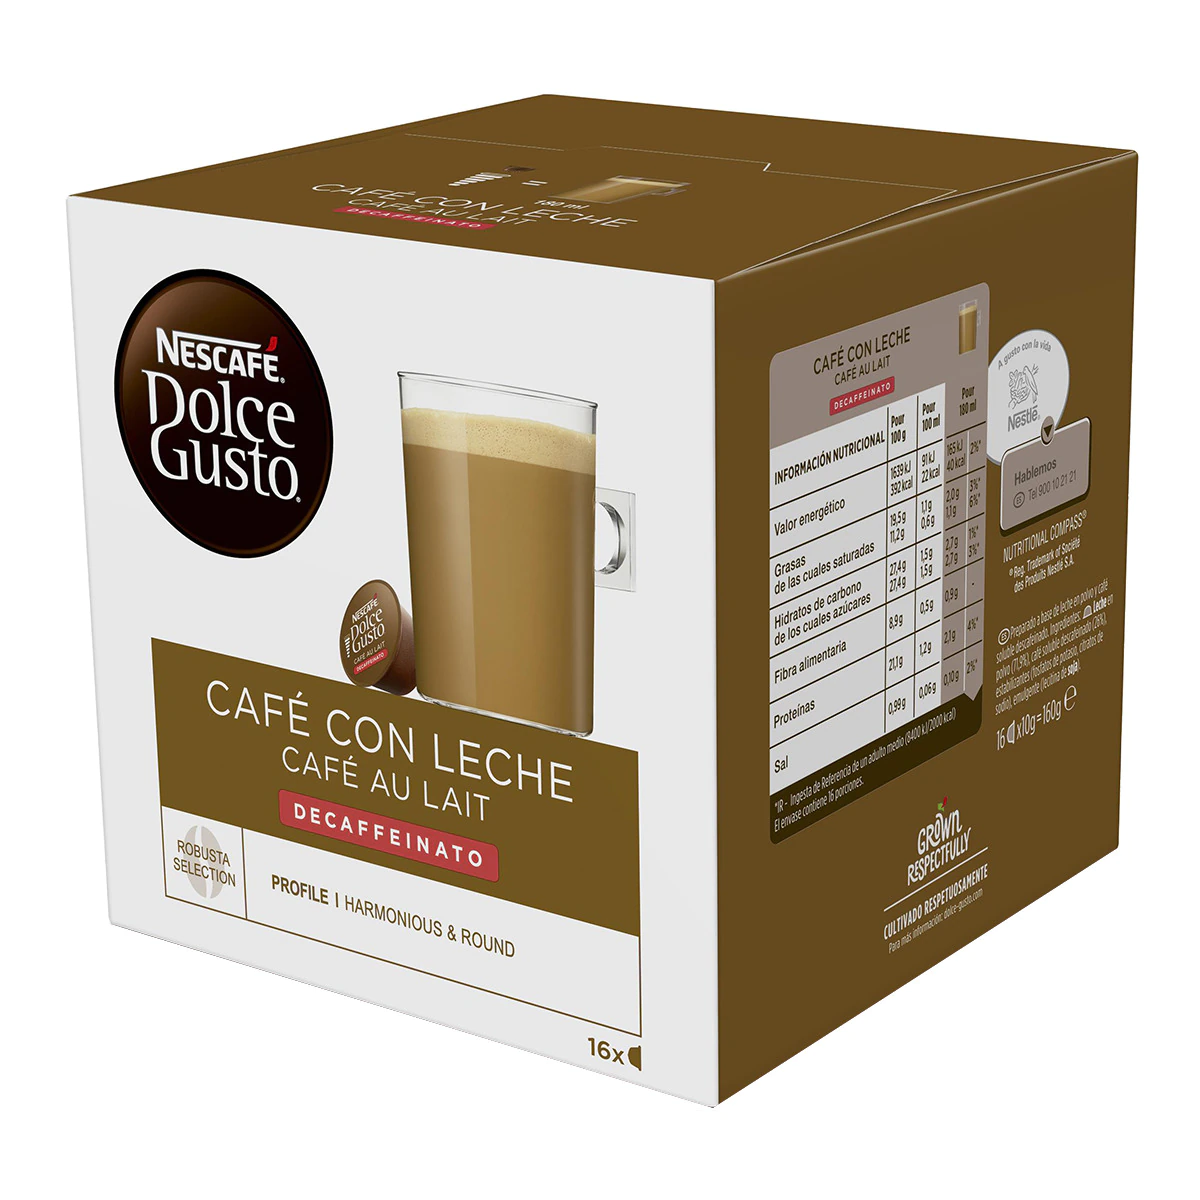 Estuche 16 cápsulas NESCAFE DOLCE GUSTO café con leche decaffeinato Selección robusta